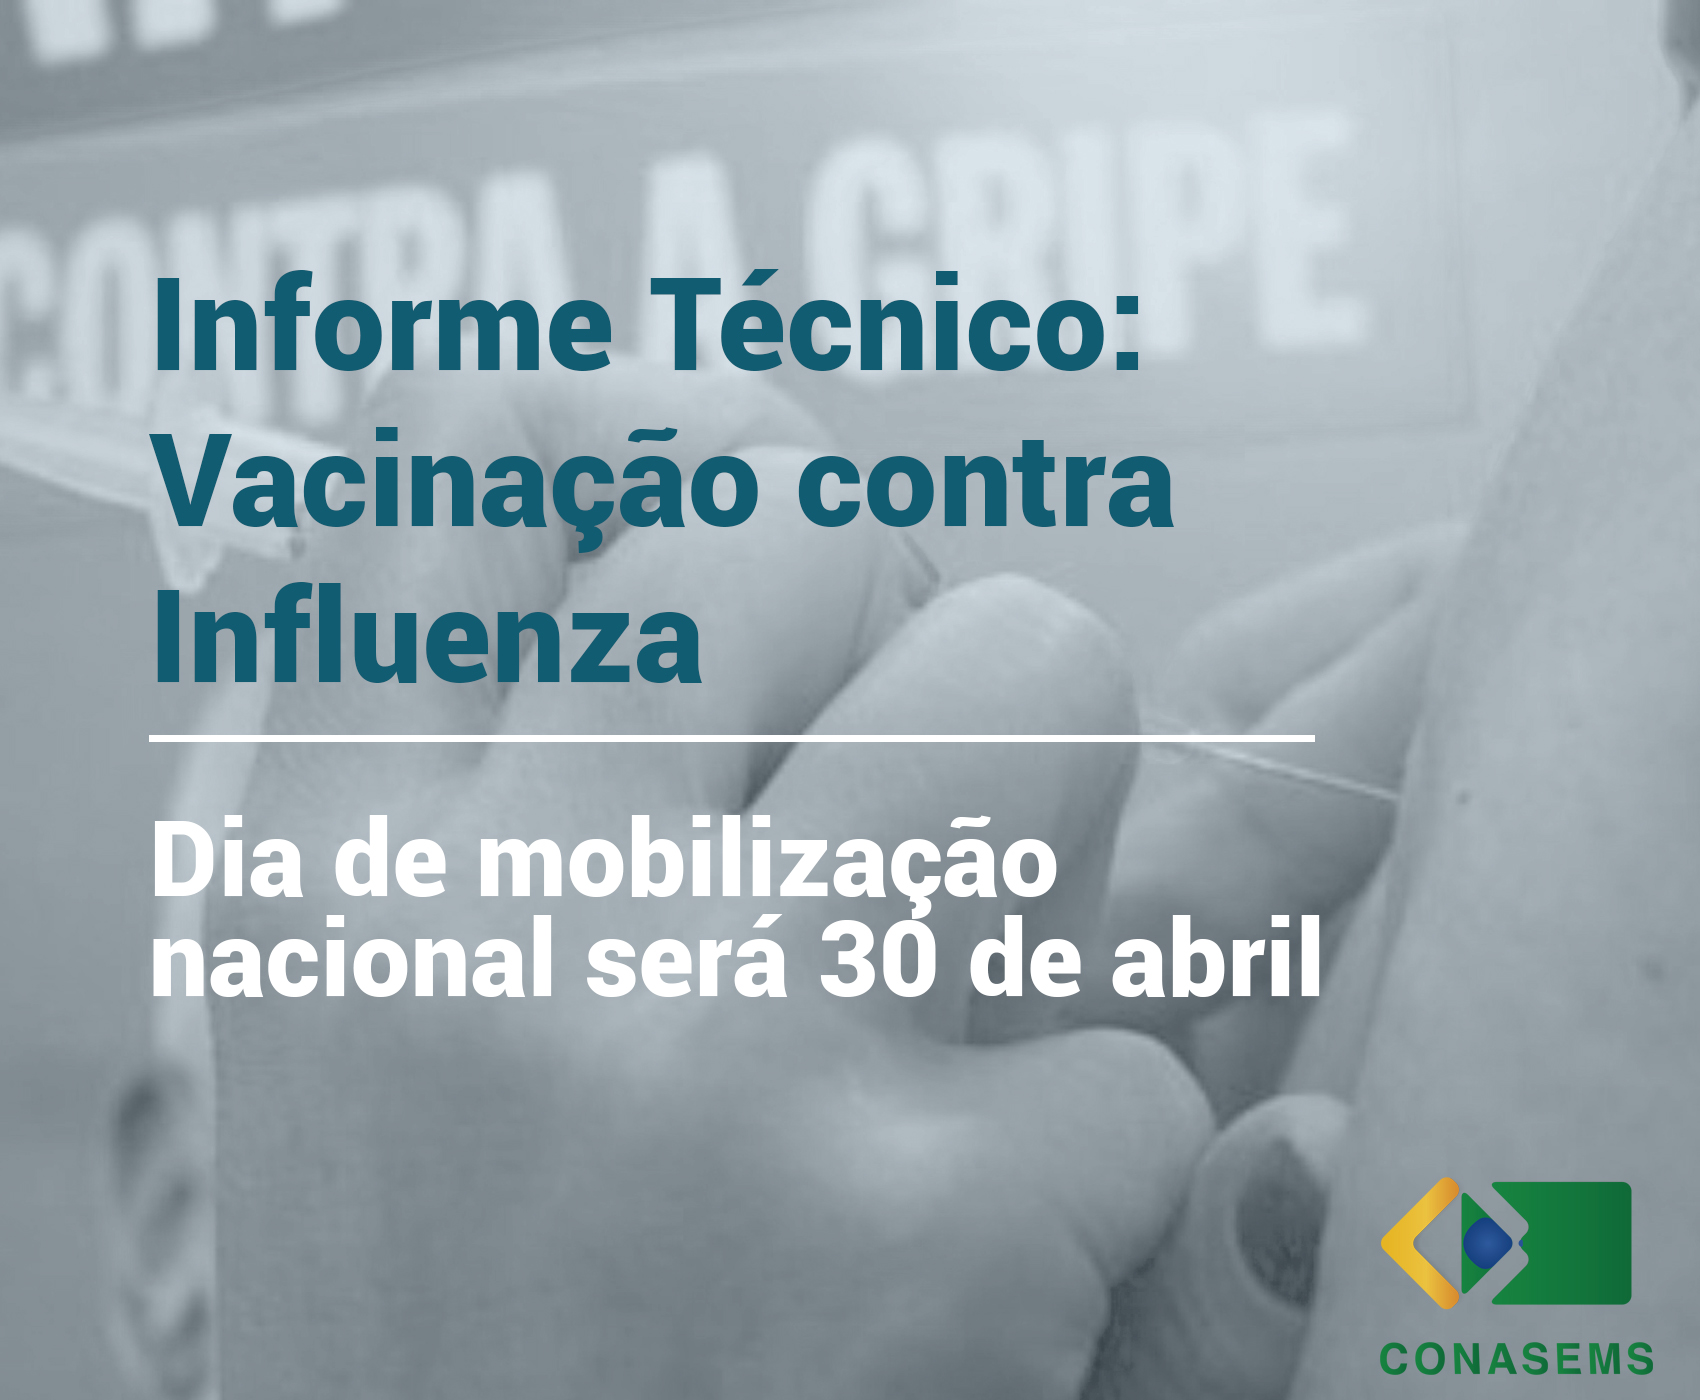 Informe Técnico: Vacinação contra influenza inicia no dia 30 de abril